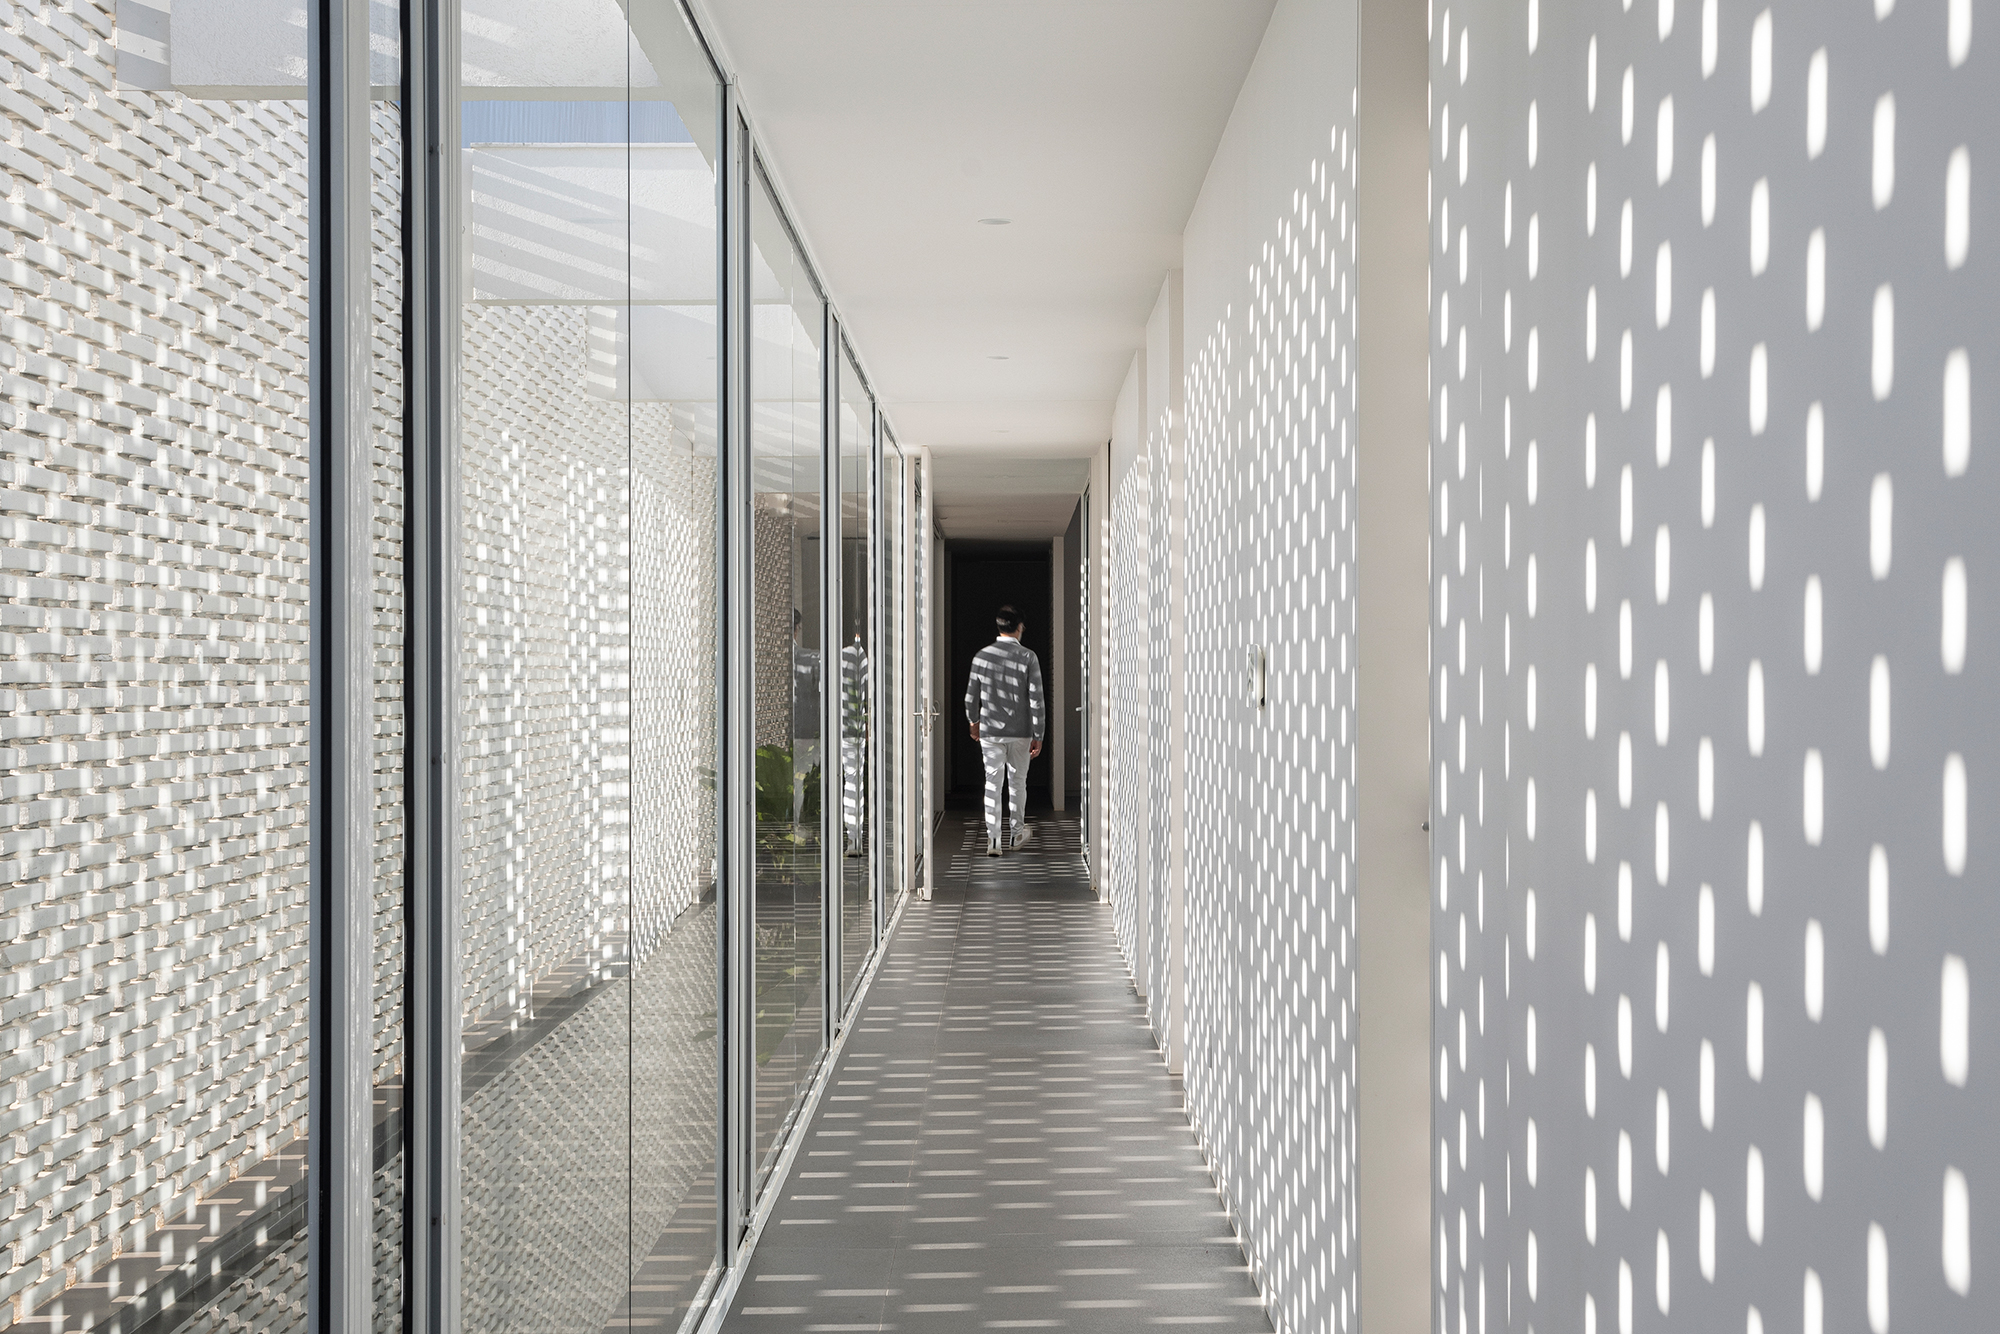 Tijolos vazados brancos compõem a fachada desta casa de 600 m² em Brasília. Projeto de Bloco Arquitetos. Na foto, corredor com efeito de luz provocado pela parede de tijolos vazados.